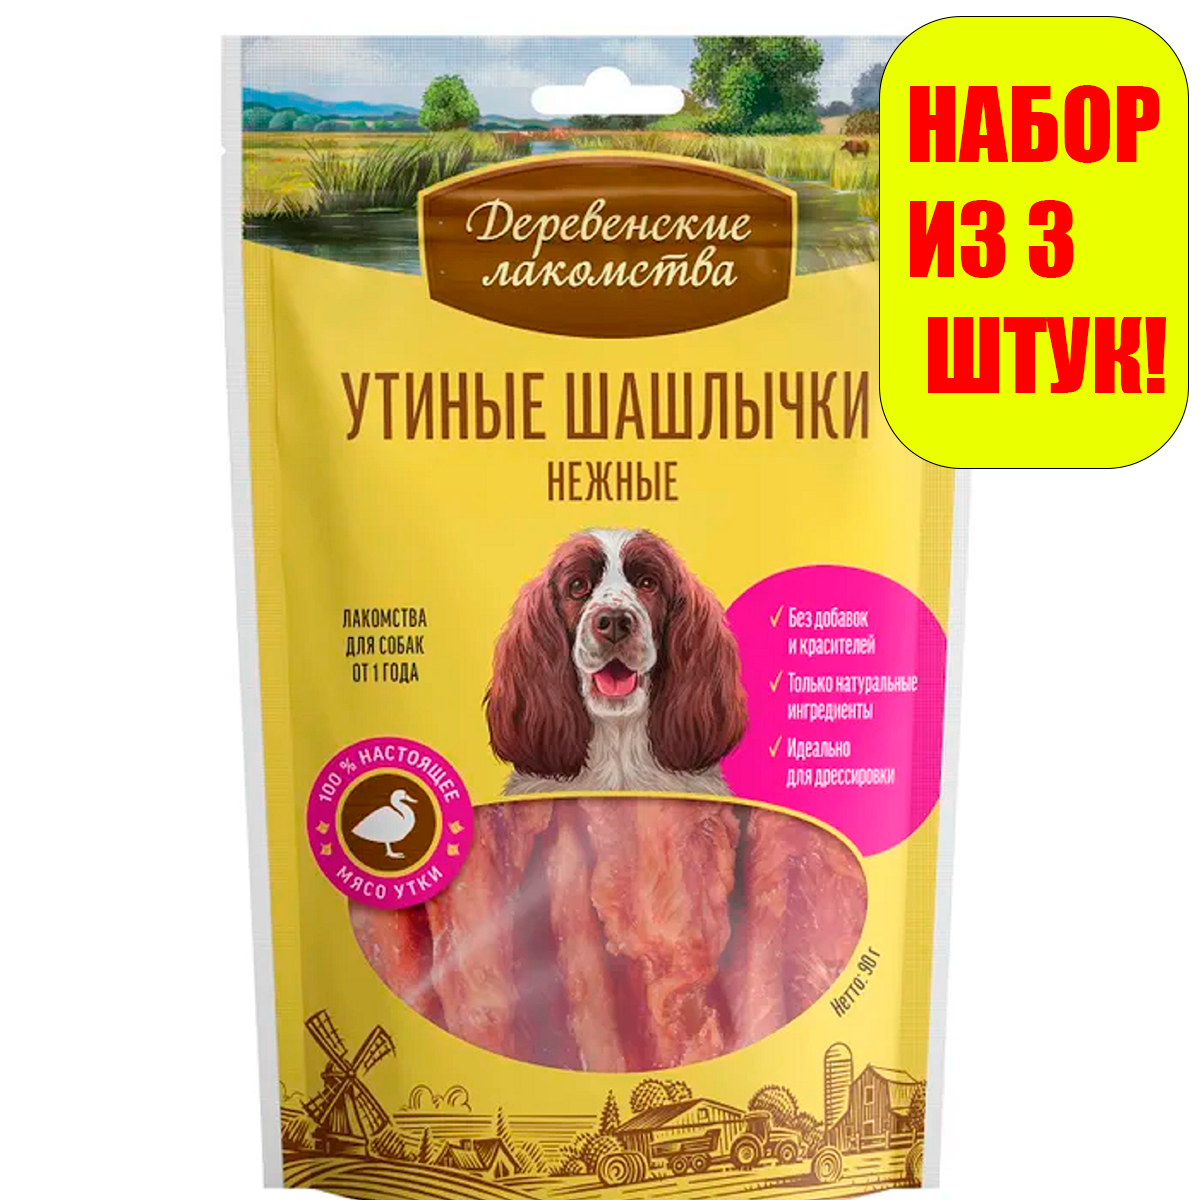 Деревенские лакомства Утиные шашлычки нежные для собак 90г(3 штуки)